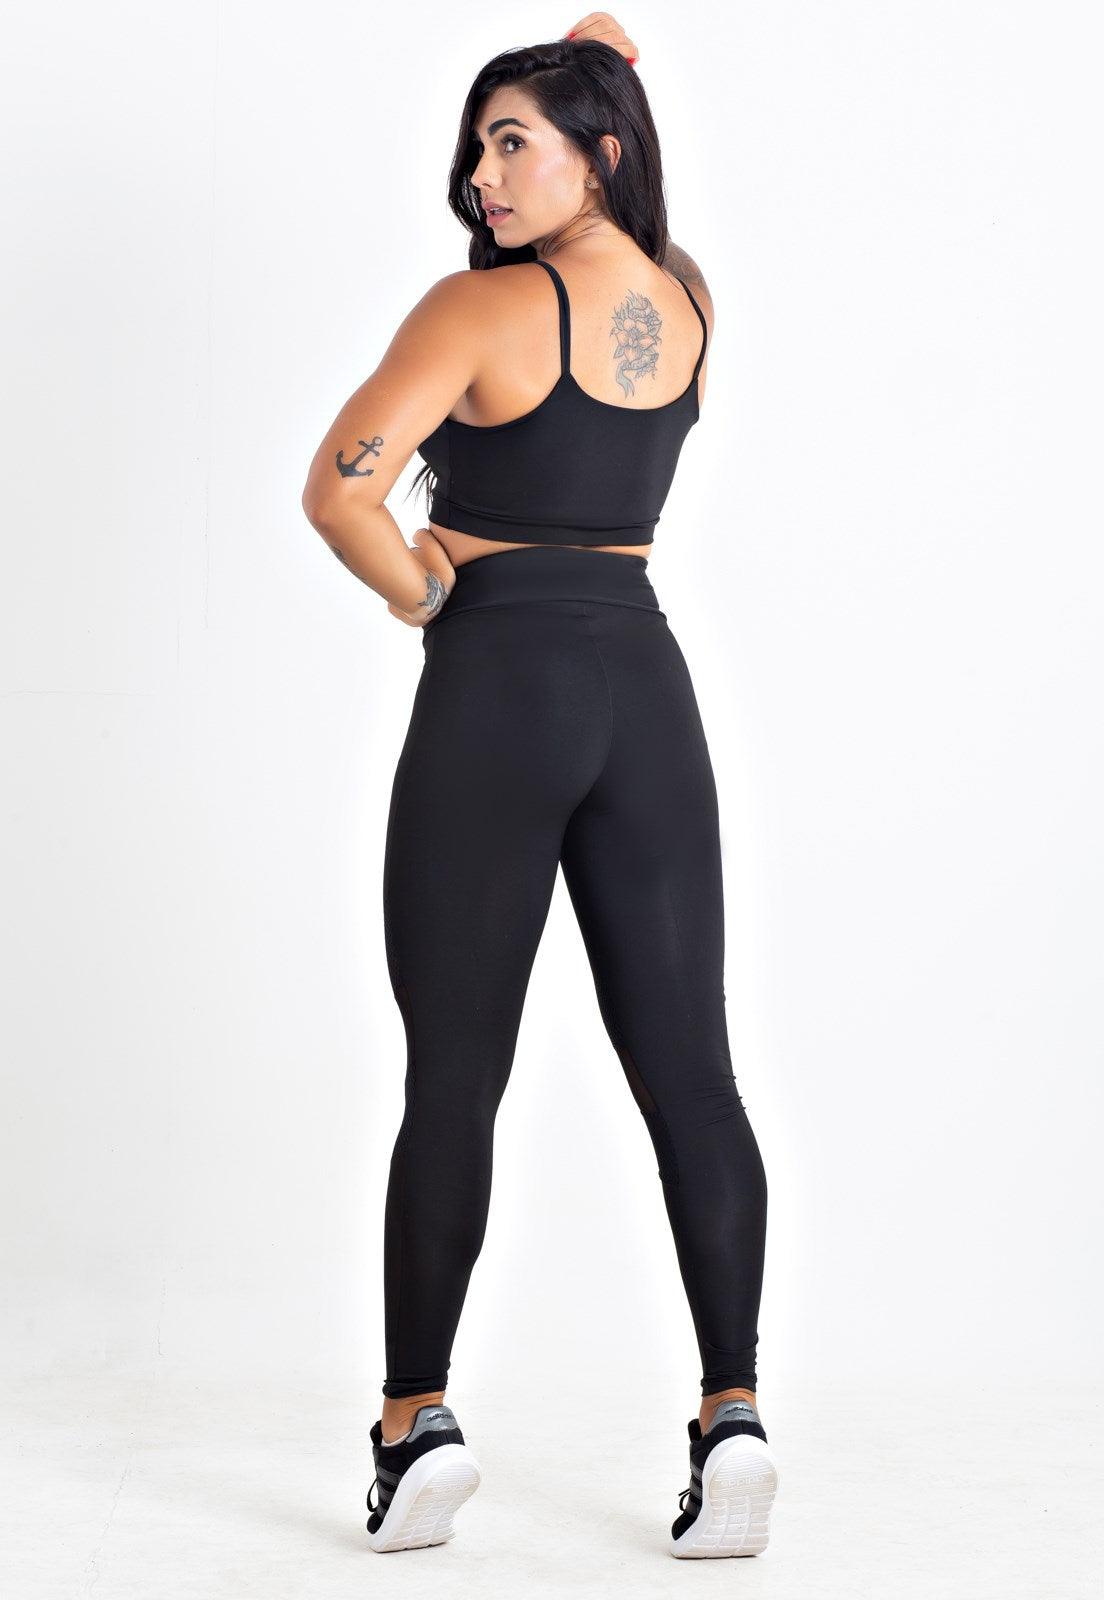 Conjunto Fitness Feminino Calça Legging Preta Estilo Ativo - Compre Agora!